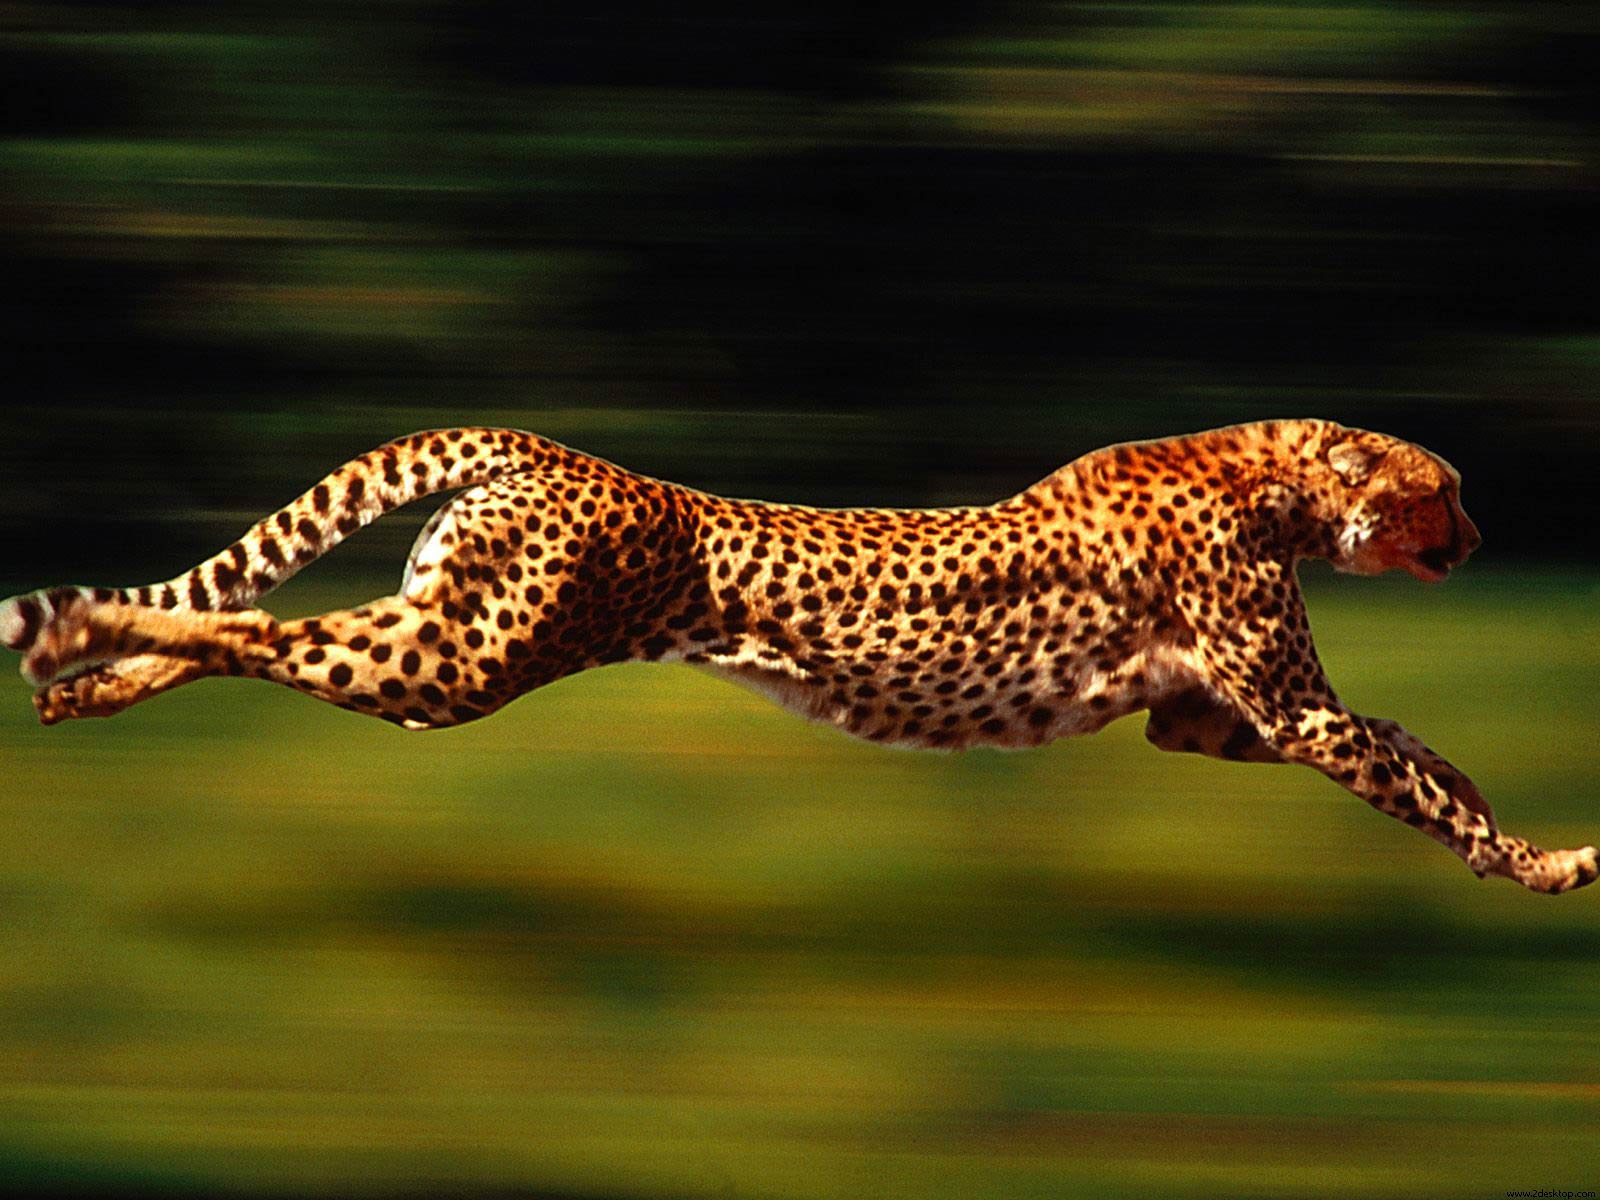 花豹分奔跑时速可达58公里/小时.相比奔跑,花豹更善于爬树.